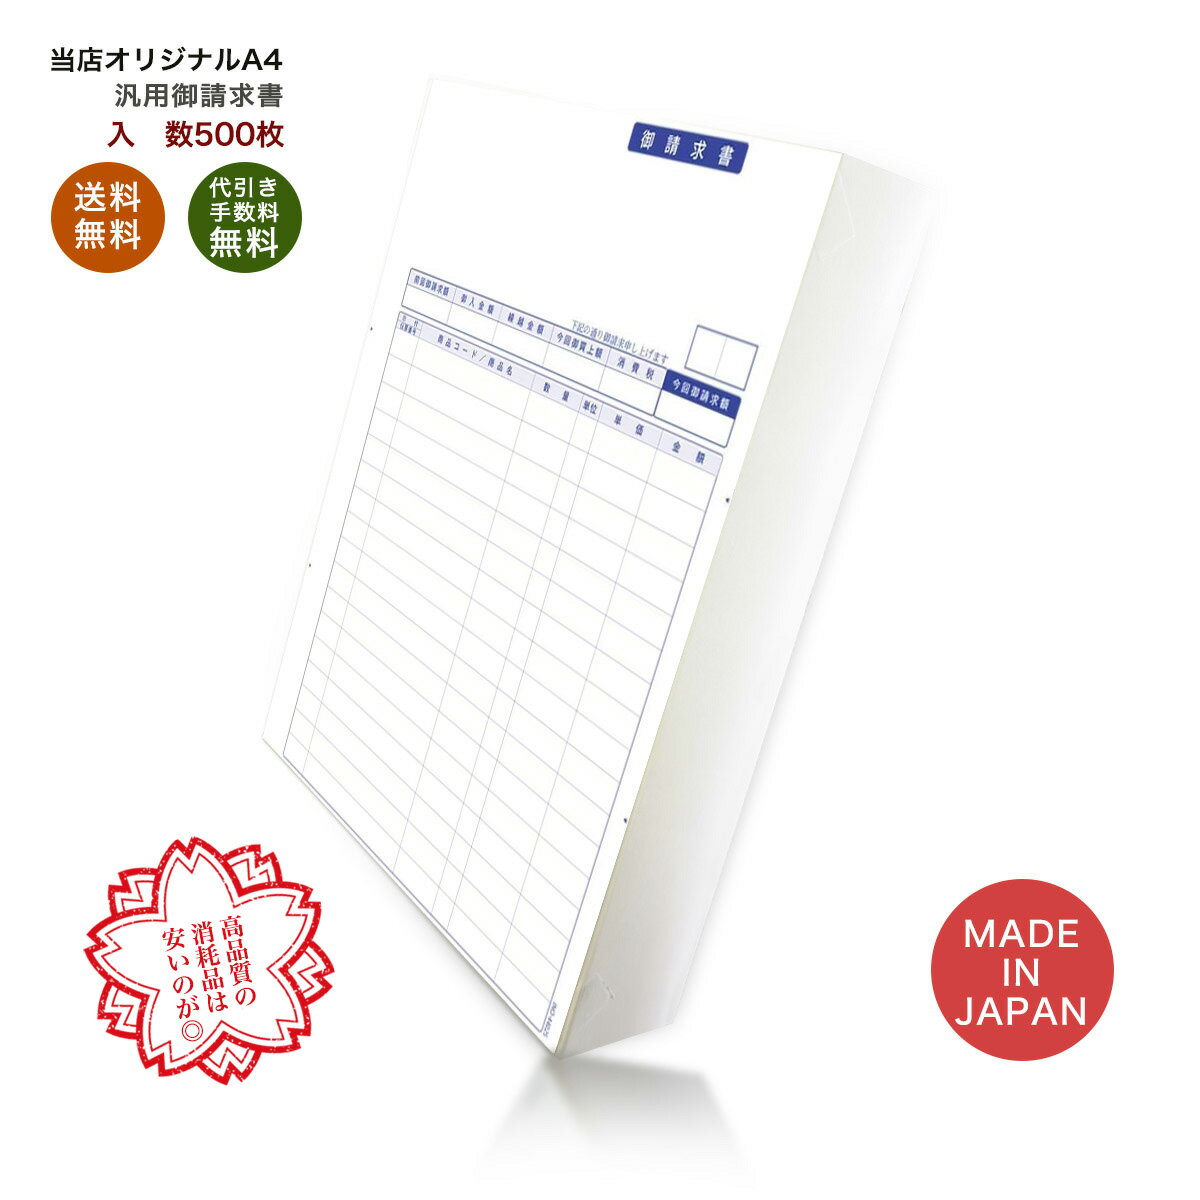 汎用御請求書 500枚 品番: INO-4402s 送料無料 代引き手数料無料 安心の日本製 オリジナル 伝票 業務用